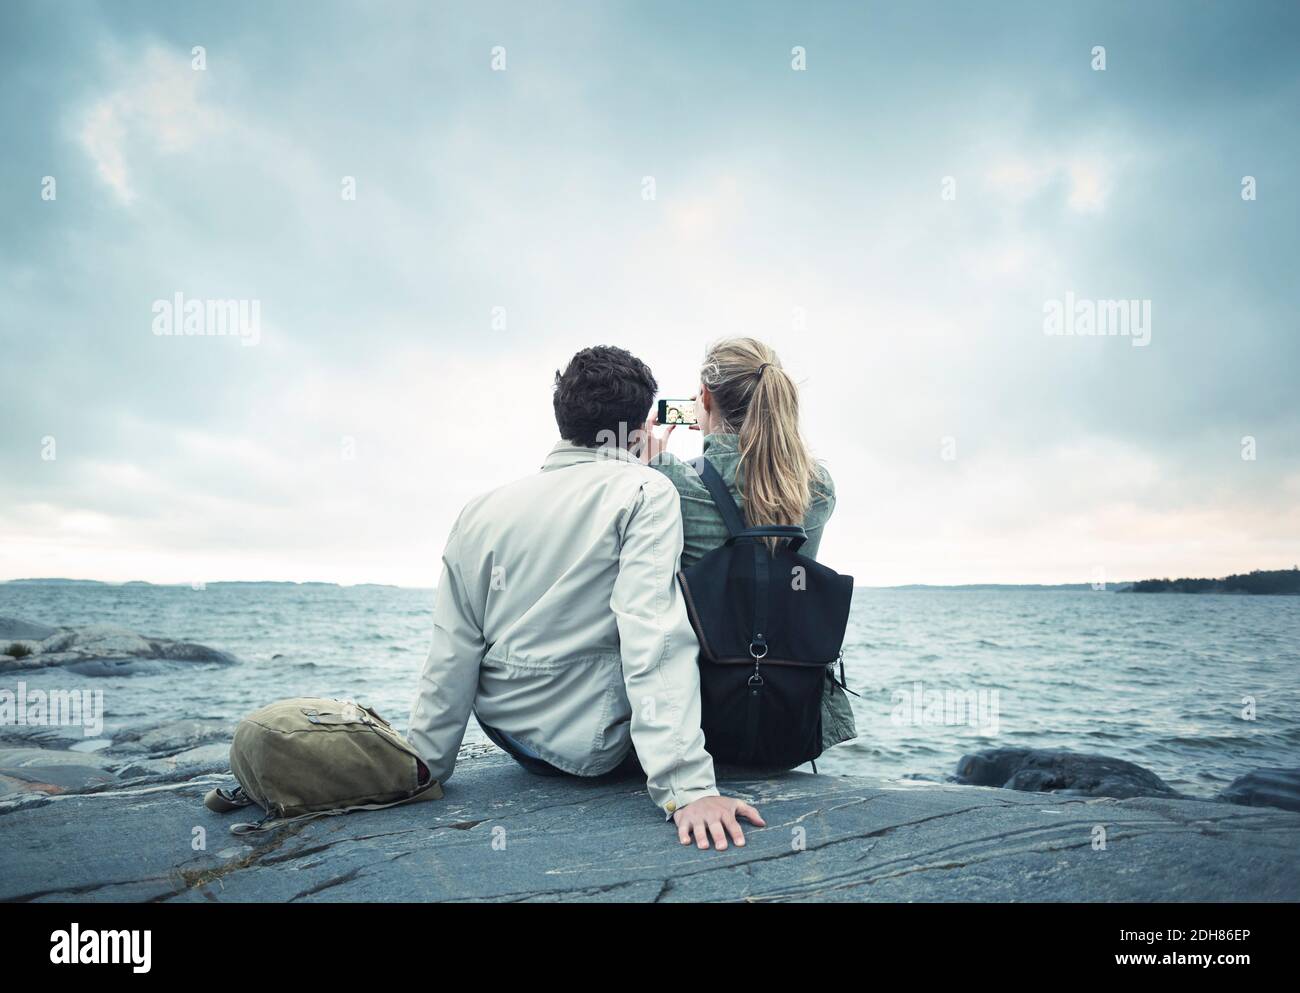 Rückansicht des Paares, das Selfie beim Sitzen auf Felsen nimmt Auf dem Seeweg Stockfoto